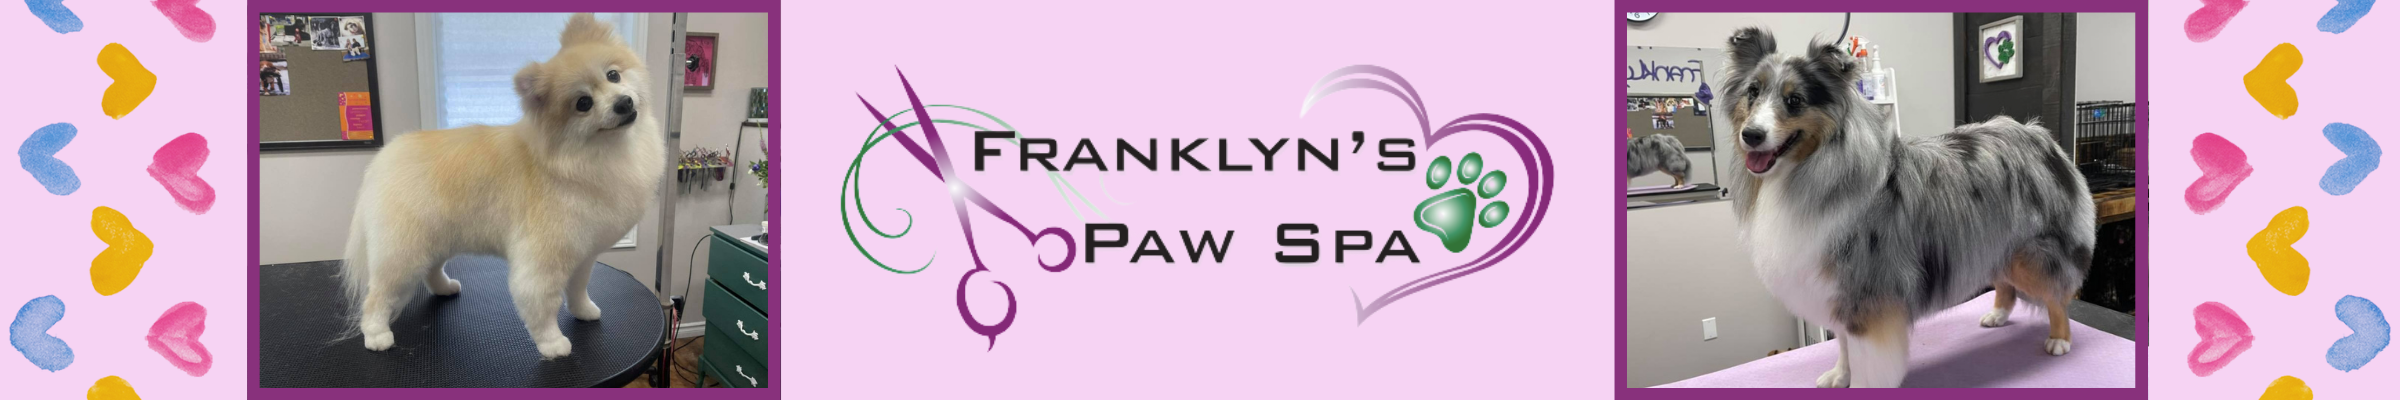 Franklyn’s Paw Spa